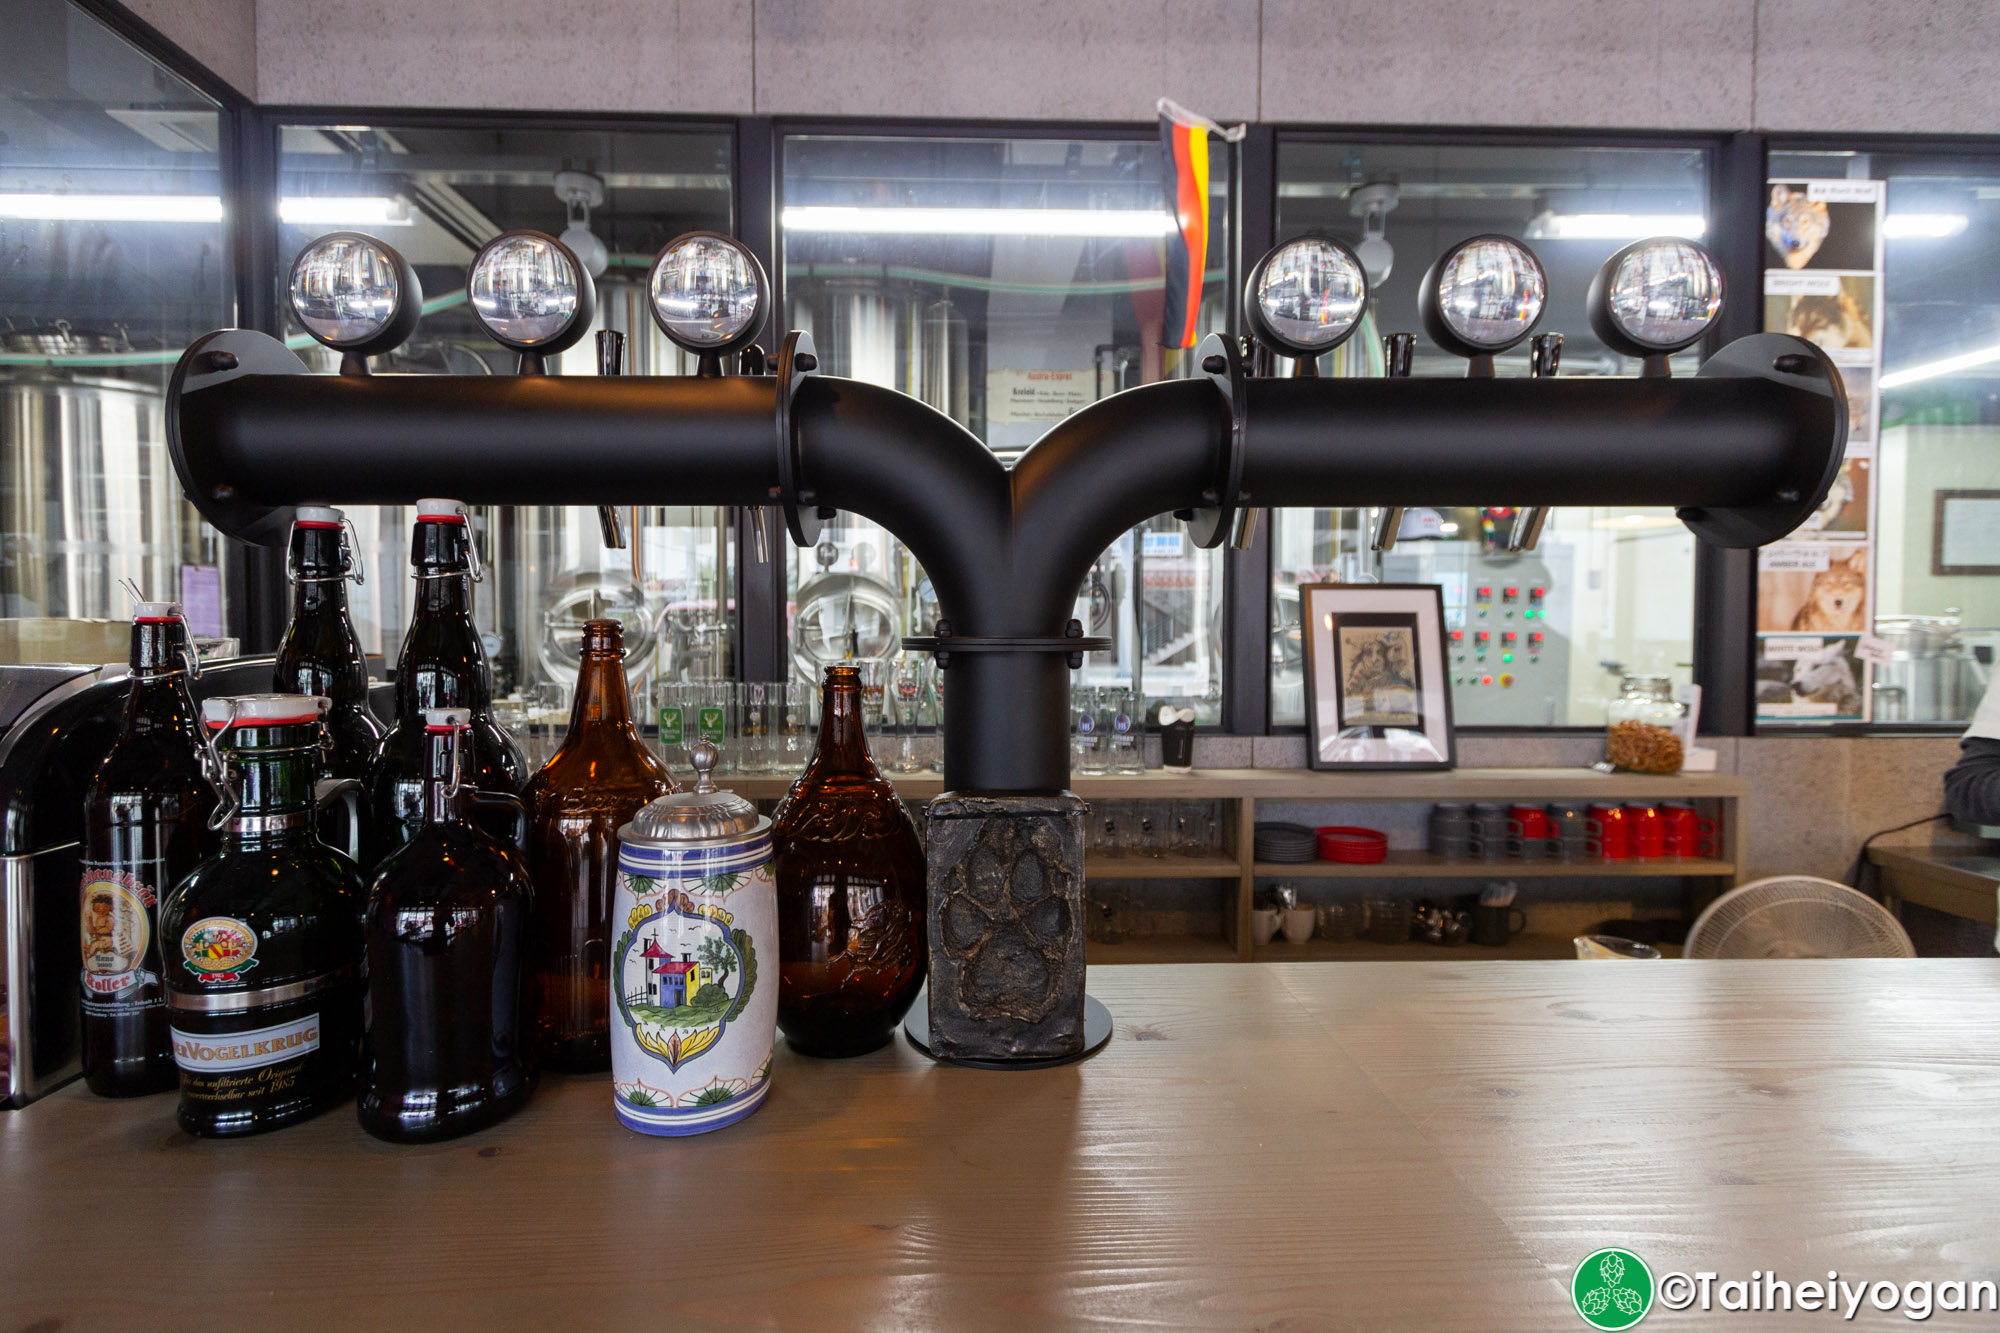 Wolfbrau Brewery & Roastery - Interior - Craft Beer Taps